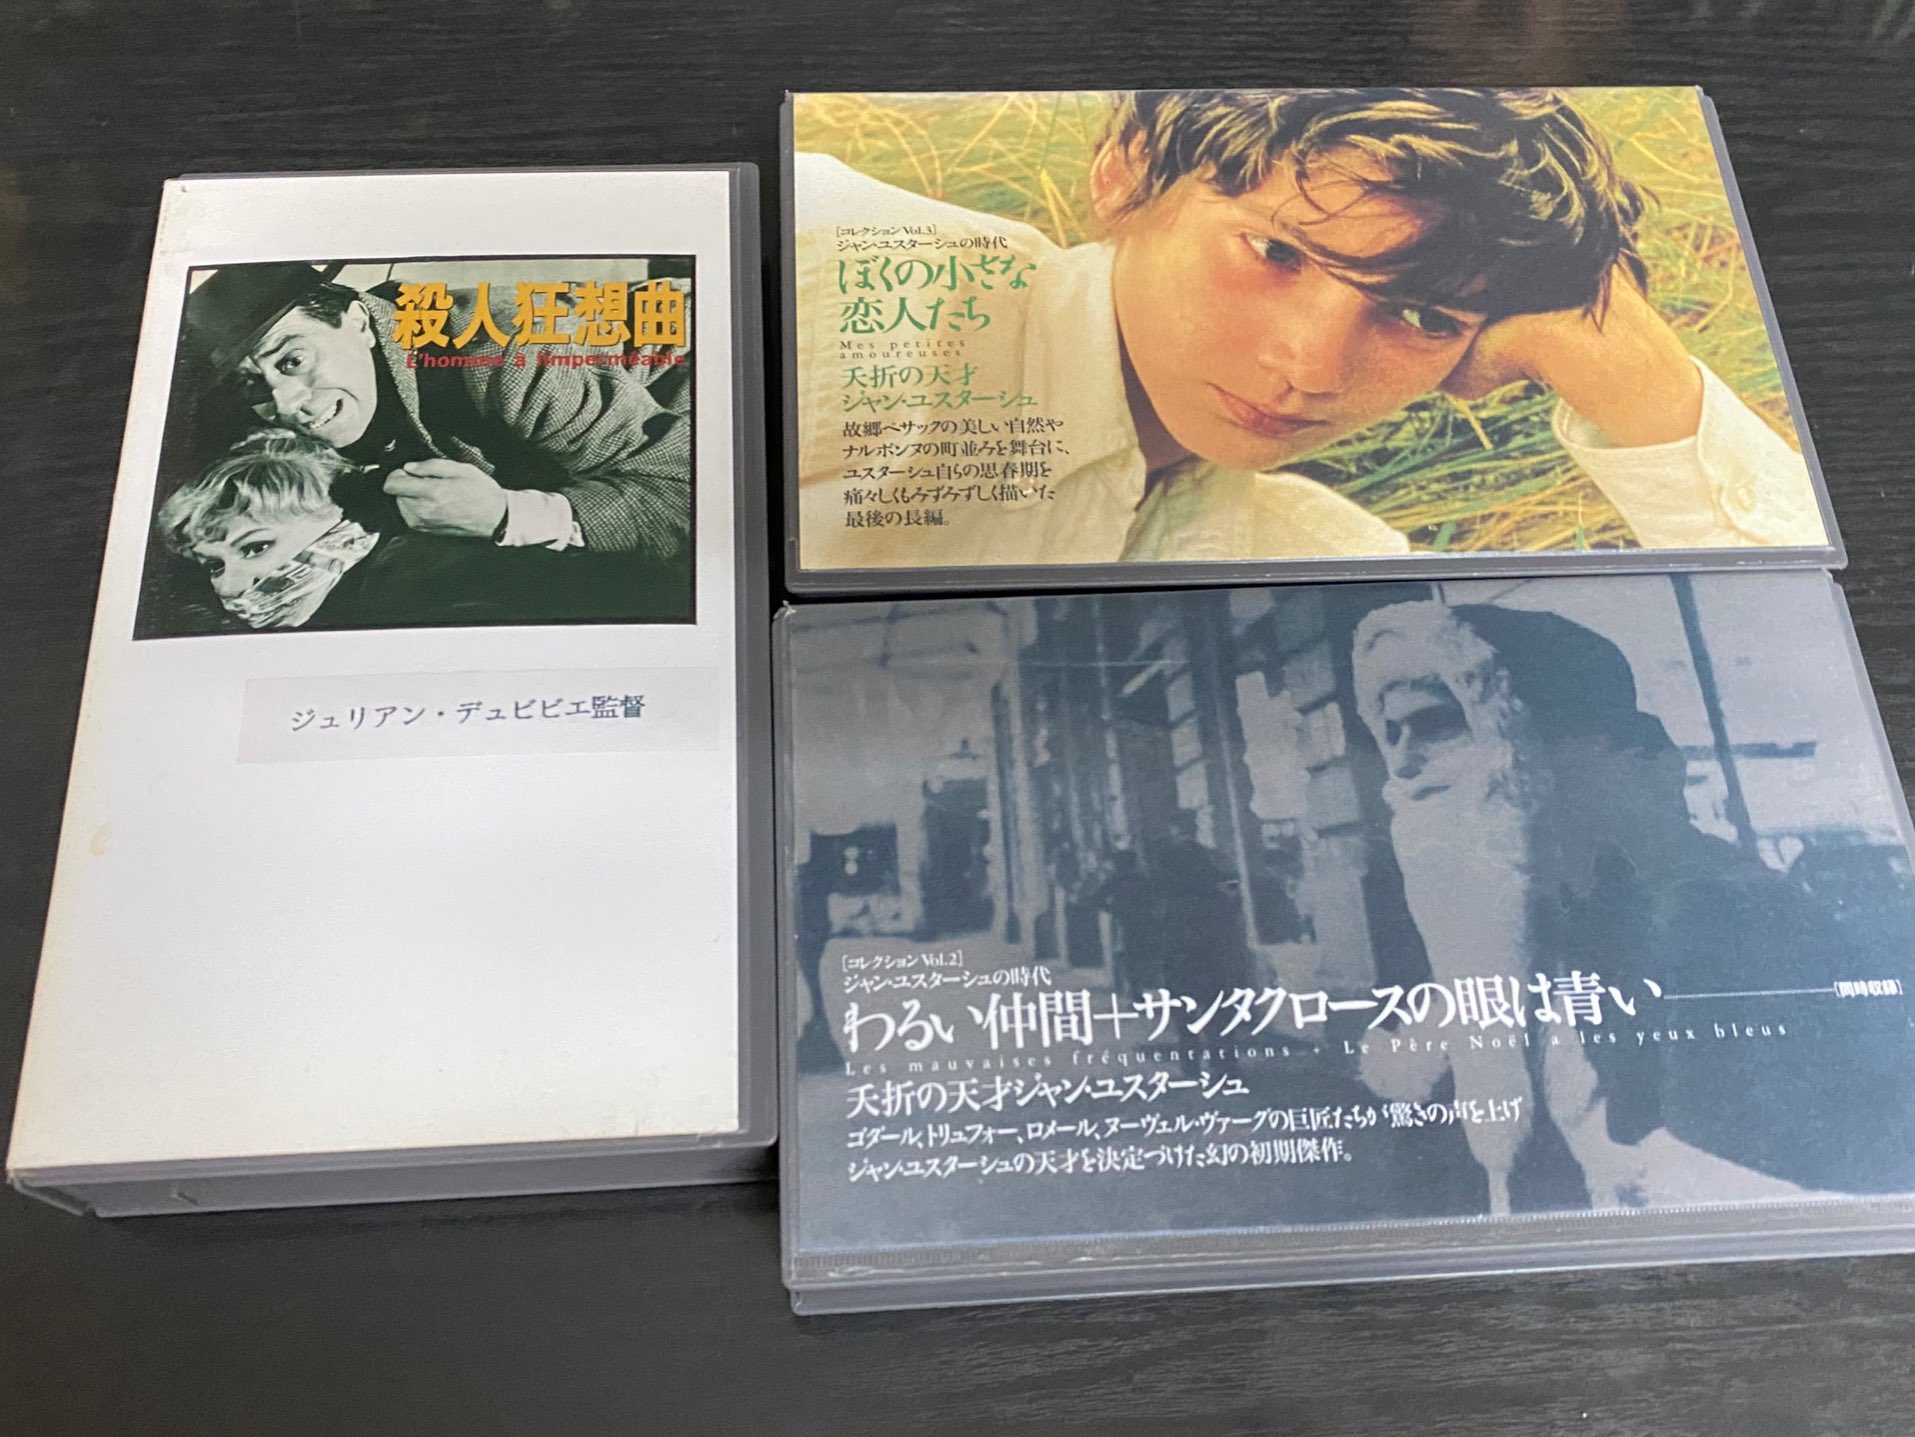 takki521 on Twitter: "稀少なVHS作品を扱う京都市内の #ふや町映画タウン 情報です。 きょうは夭折の天才 #ジャン